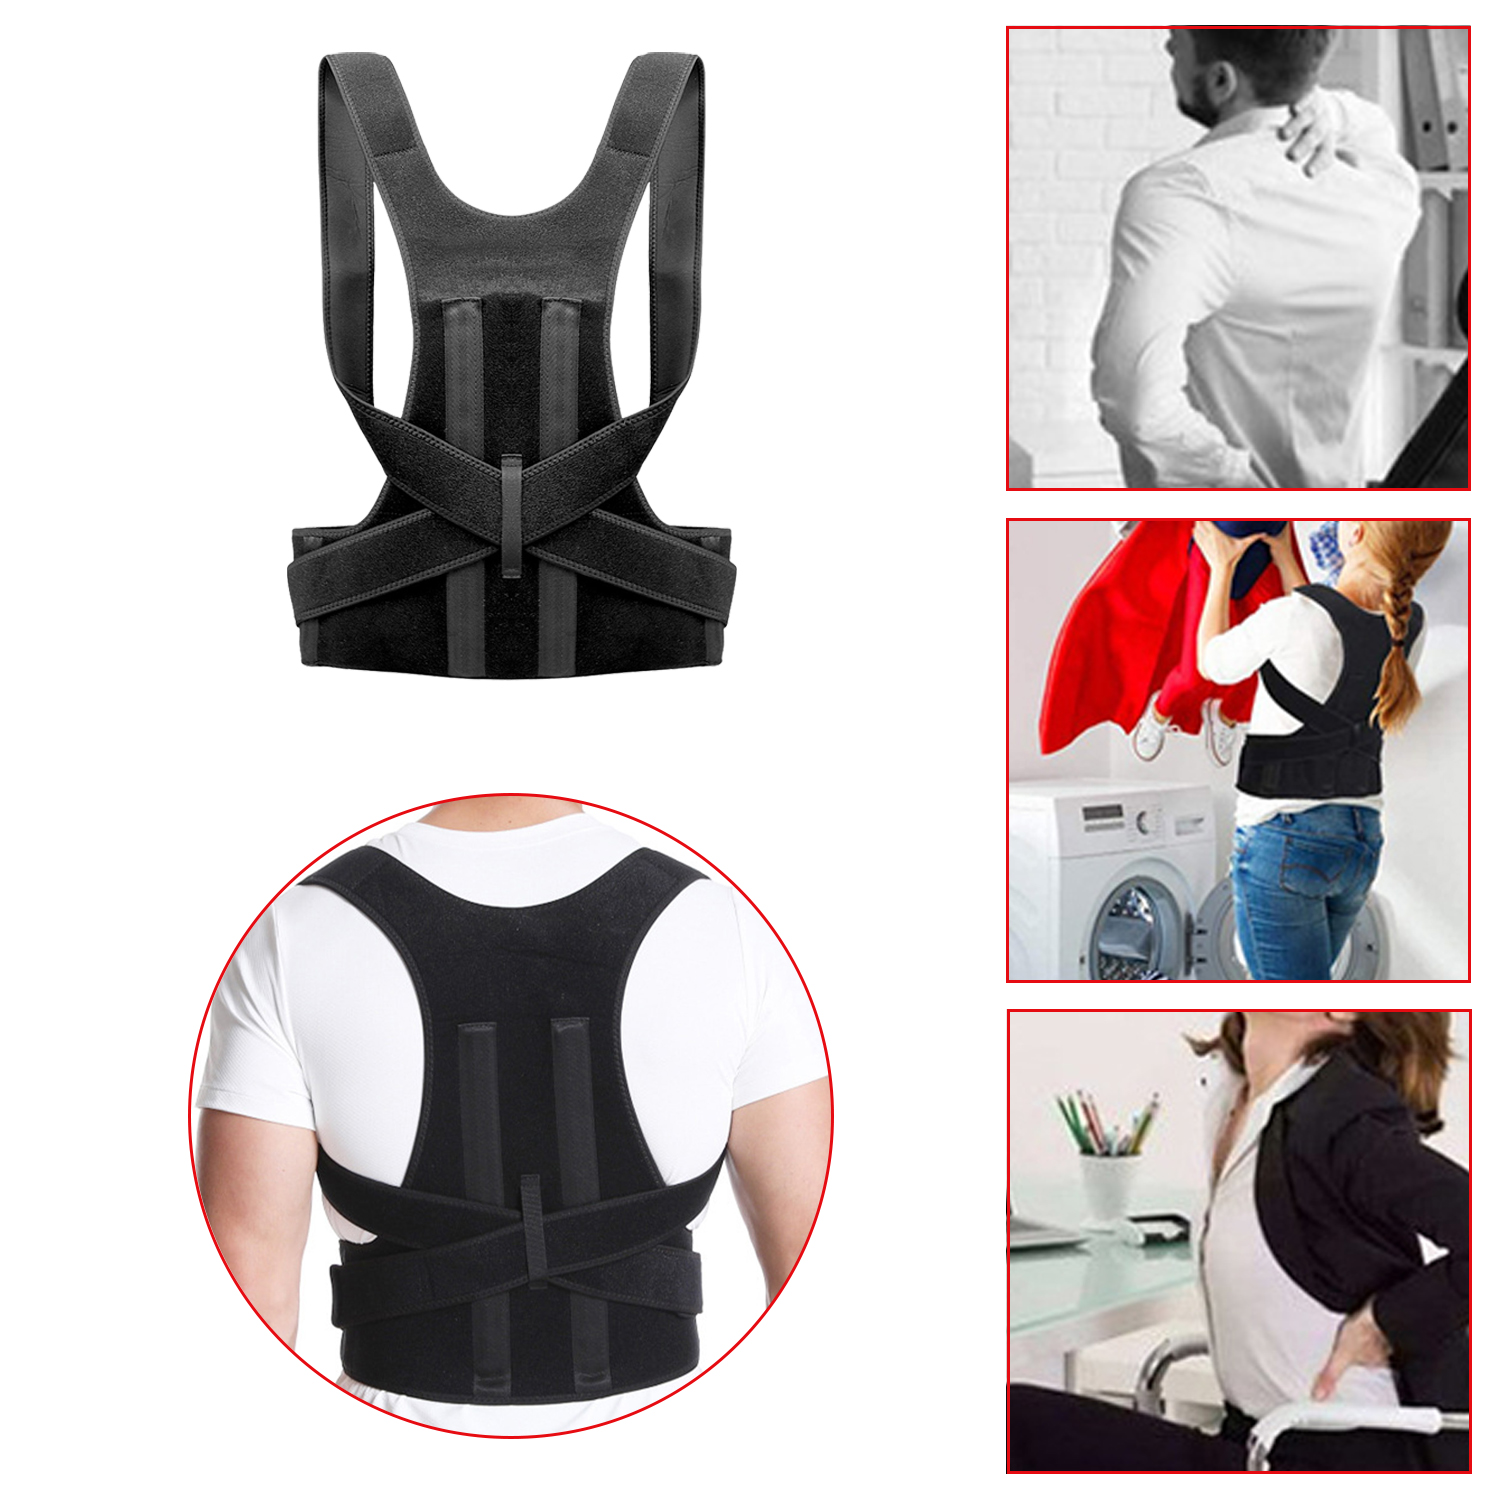 Corrector de postura para espalda, soporte de clavícula, deja de encorvarse y encorvarse, entrenador de espalda ajustable Unisex